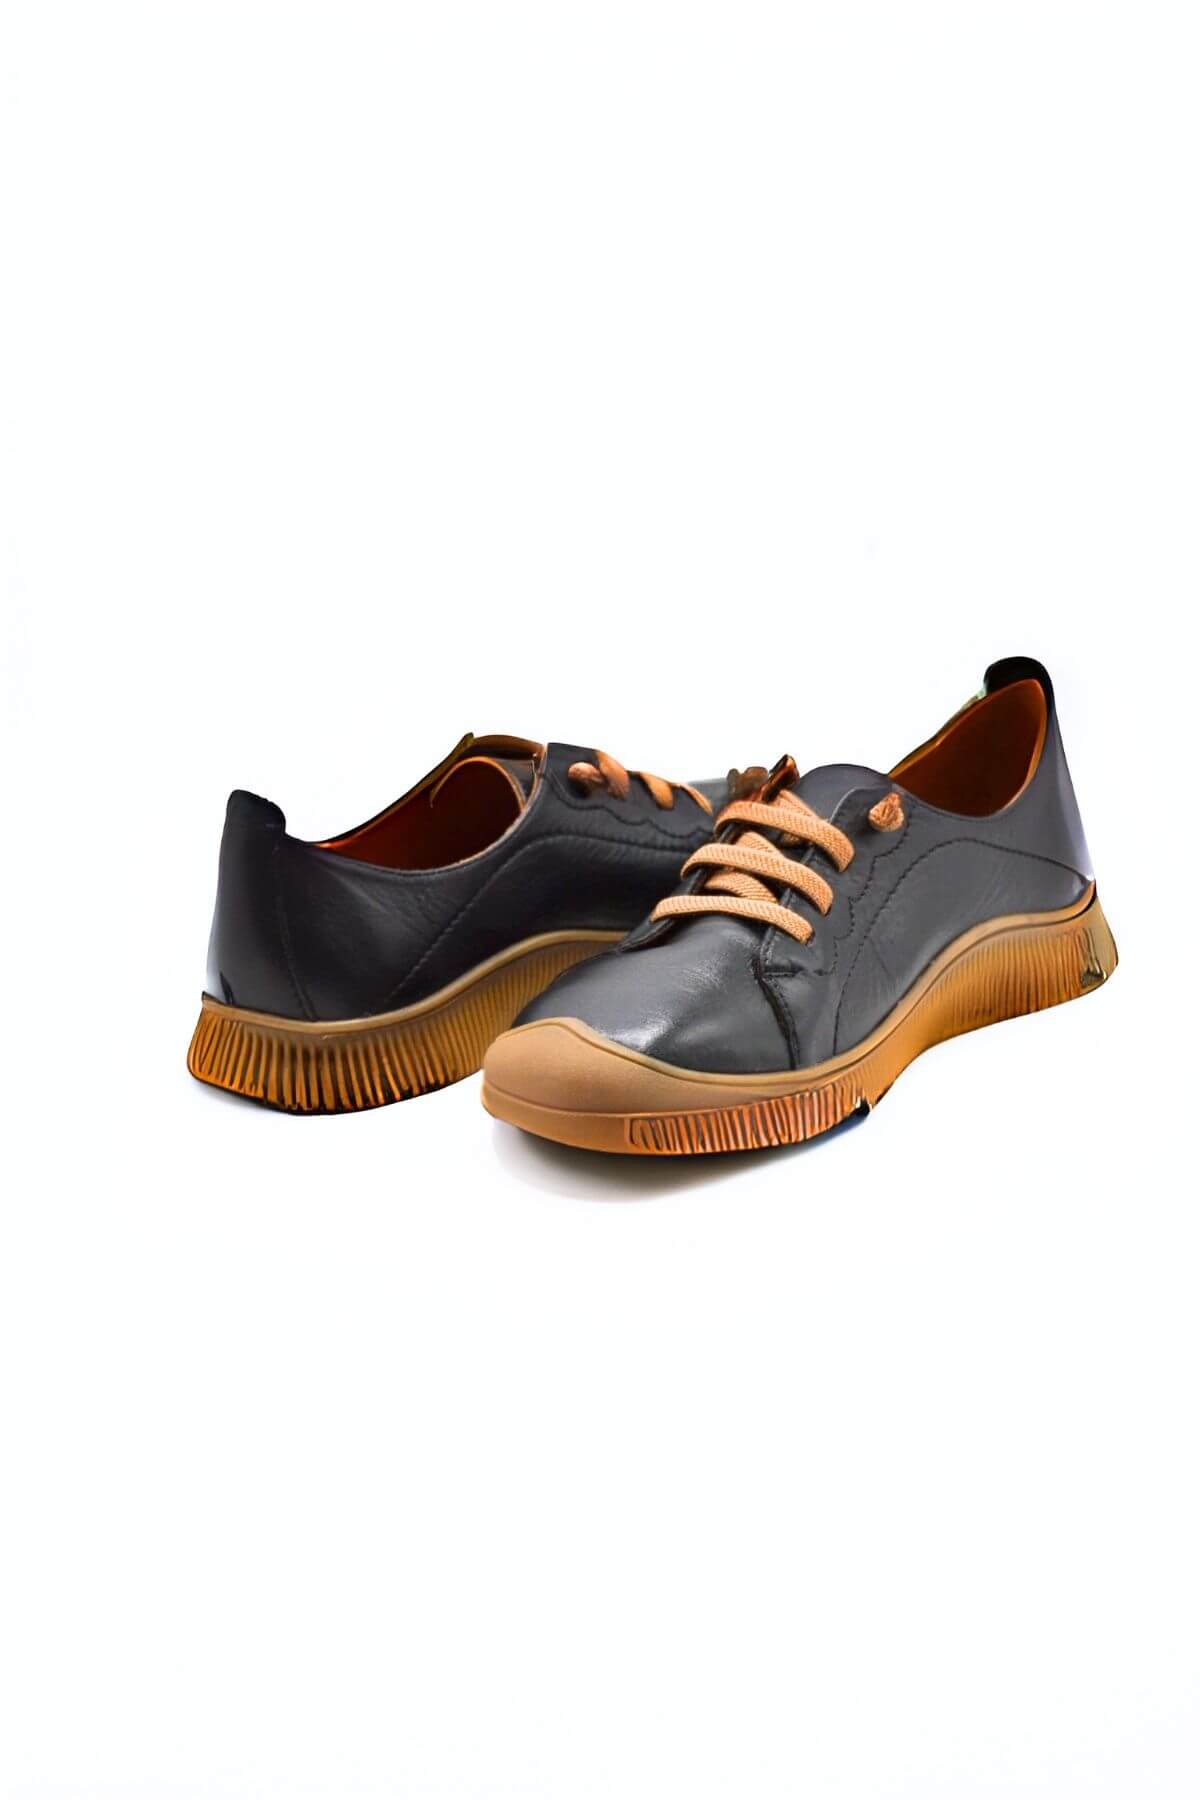 Kadın Comfort Deri Ayakkabı Siyah 2413504Y - Thumbnail